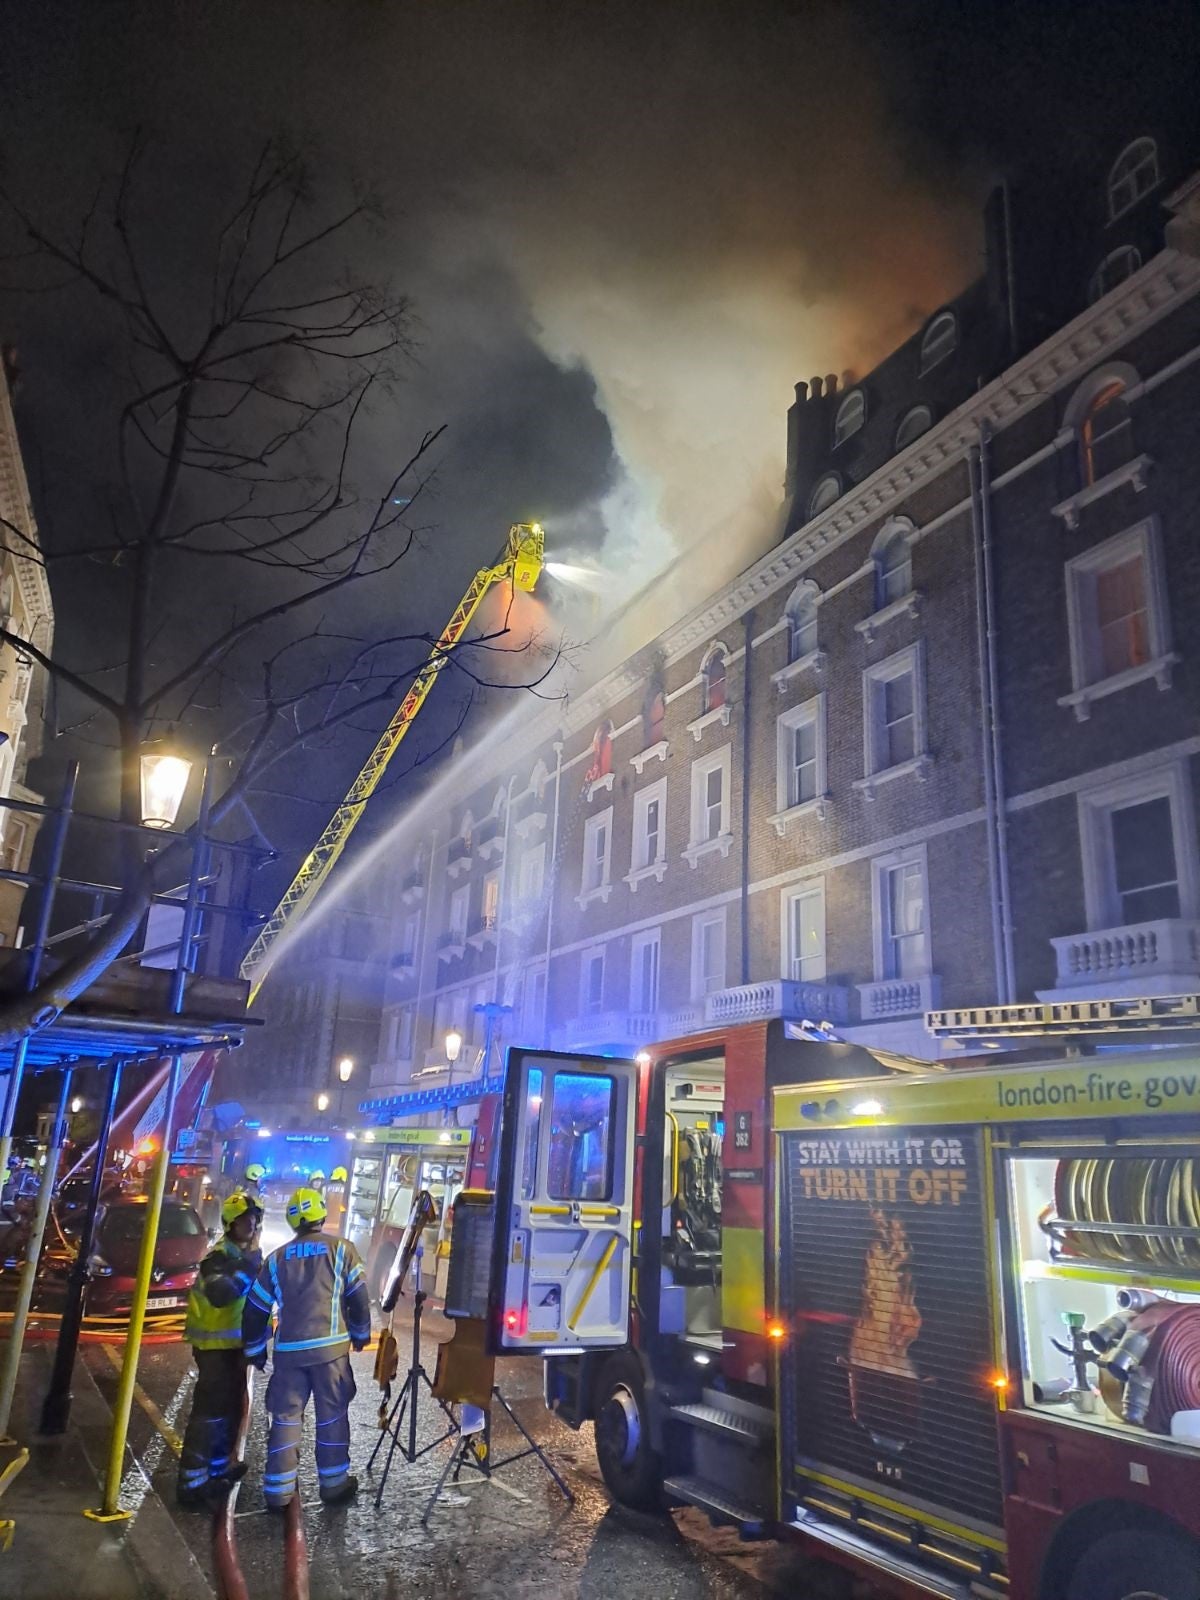 Firefighters battle the blaze inside the terraced house in South Kensington